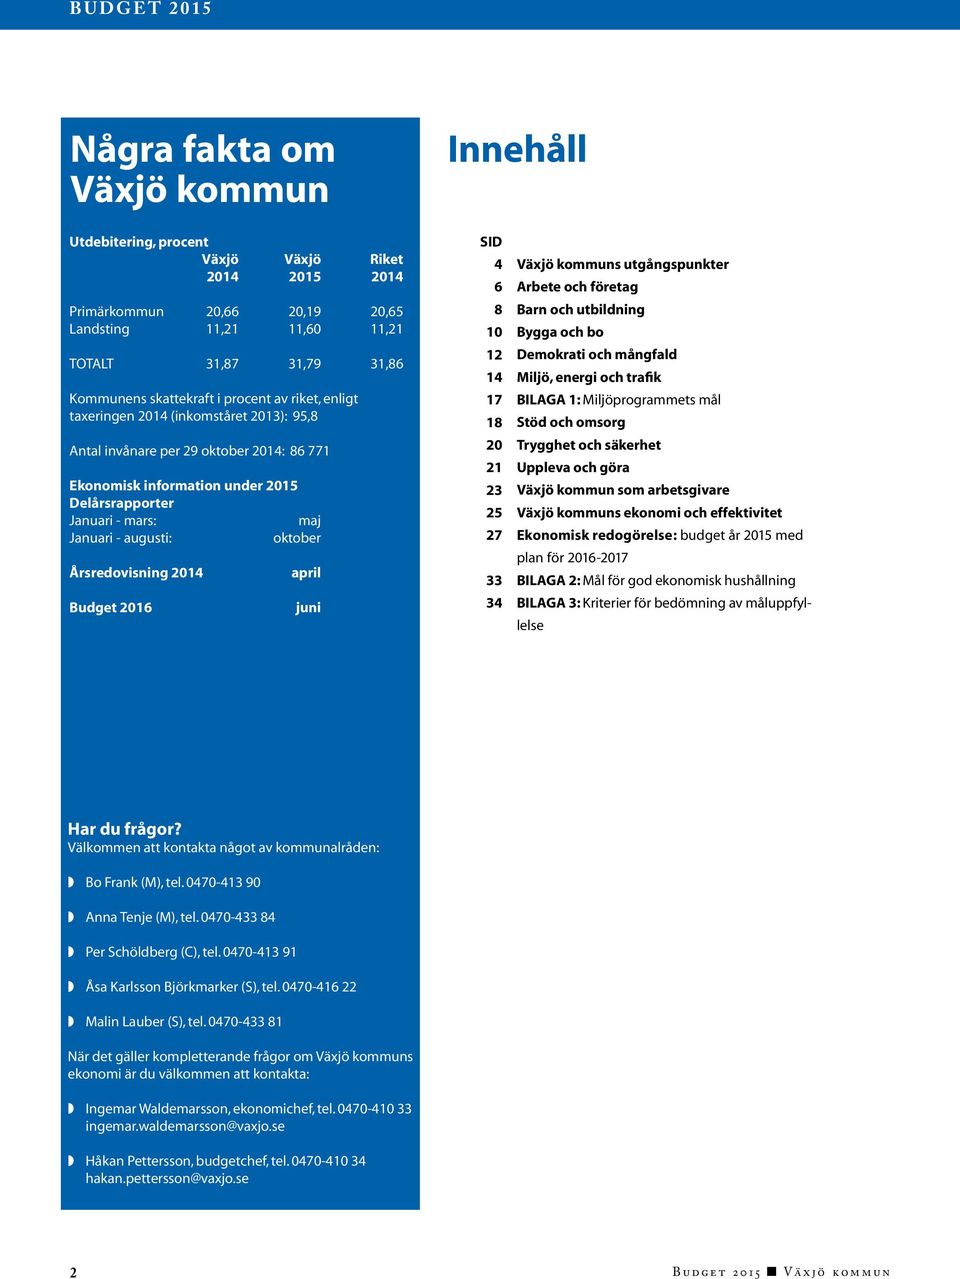 oktober Årsredovisning 2014 Budget 2016 april juni SID 4 6 8 10 12 14 17 18 20 21 23 25 27 33 34 Växjö kommuns utgångspunkter Arbete och företag Barn och utbildning Bygga och bo Demokrati och